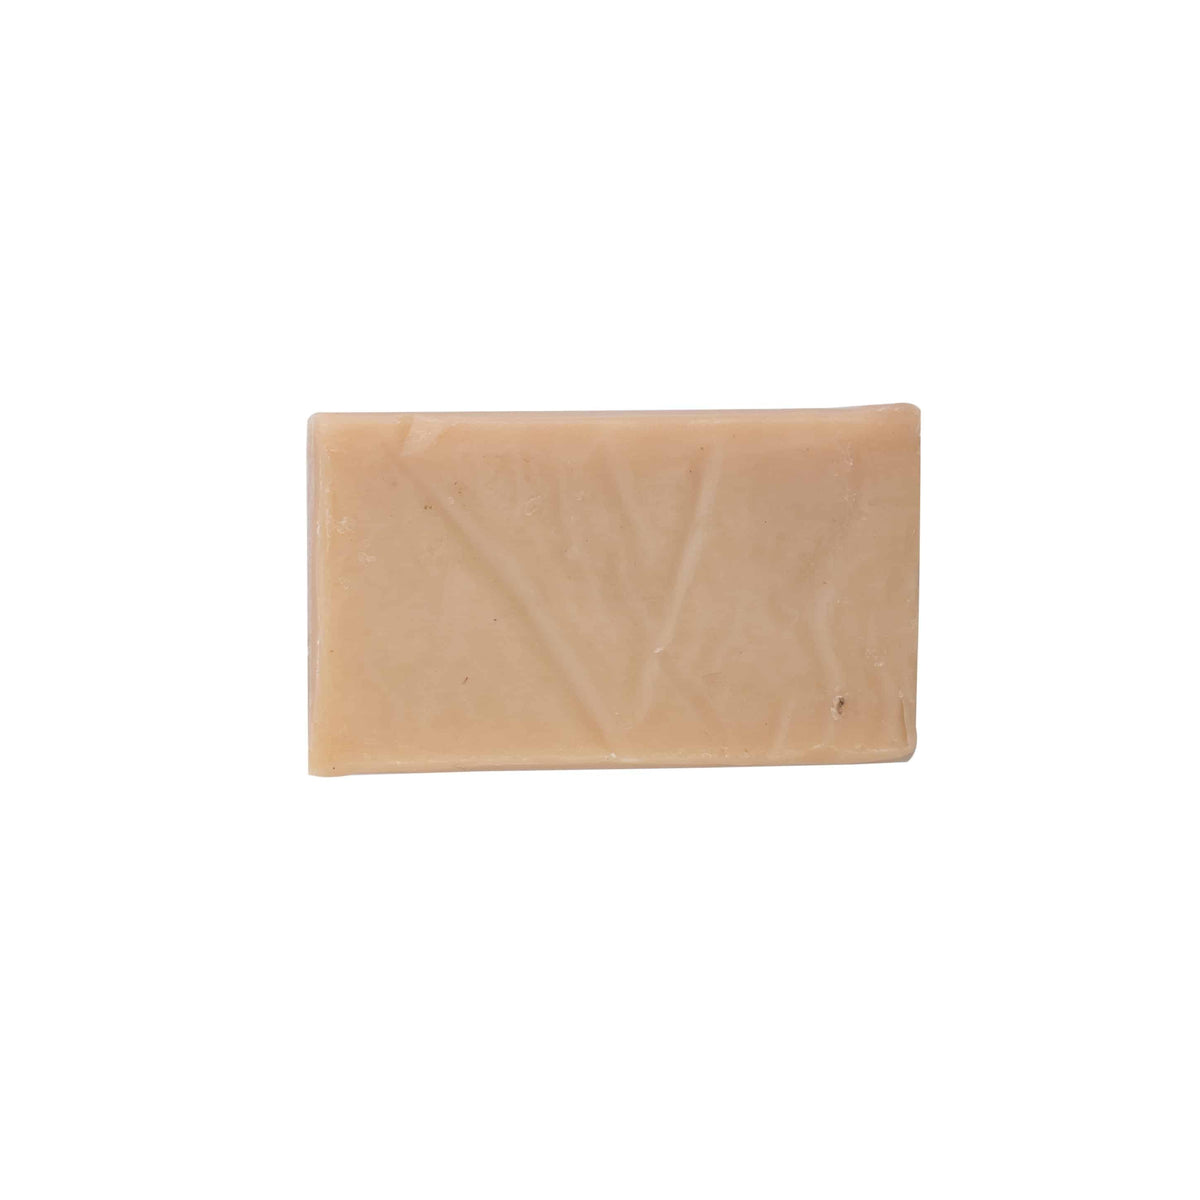 Daily Detox Natural Soap Bar - Mytri Designs